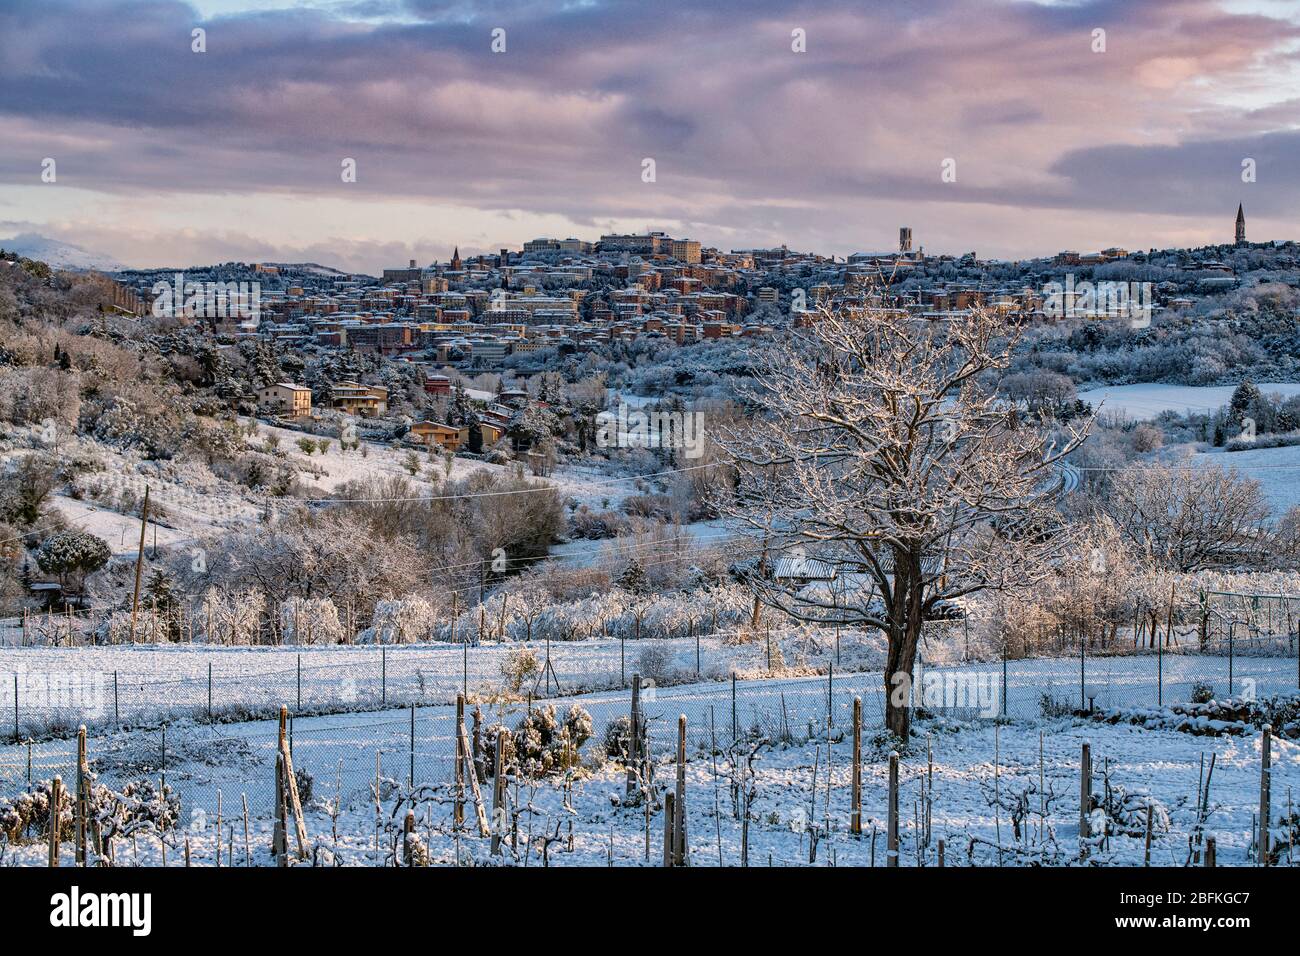 Perugia, Umbrien, Italien. Stimmungsvolle Winteransicht mit Schnee von Perugia mit seiner Skyline, umgeben von der Landschaft. Umbrien ist das grüne Herz Italiens. Stockfoto